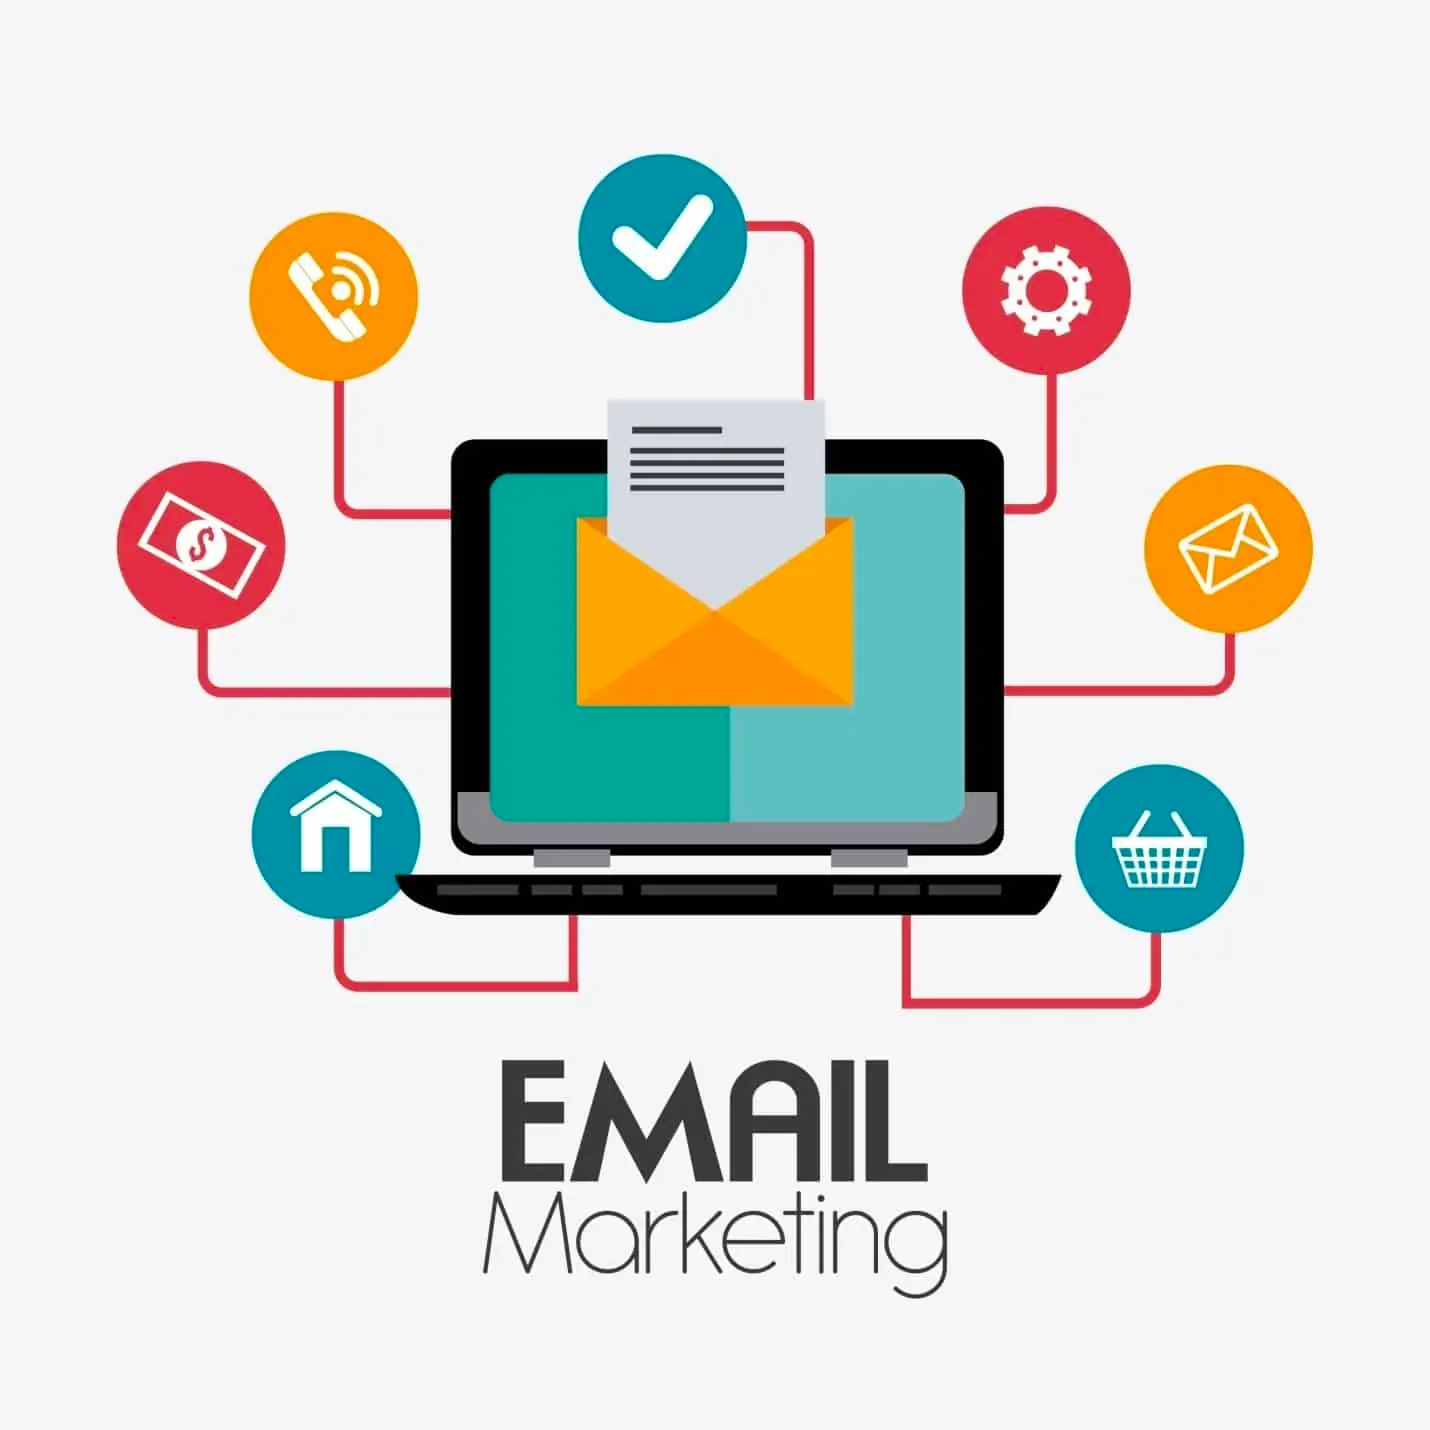 Email marketing là gì? Những thông tin cần biết về email marketing